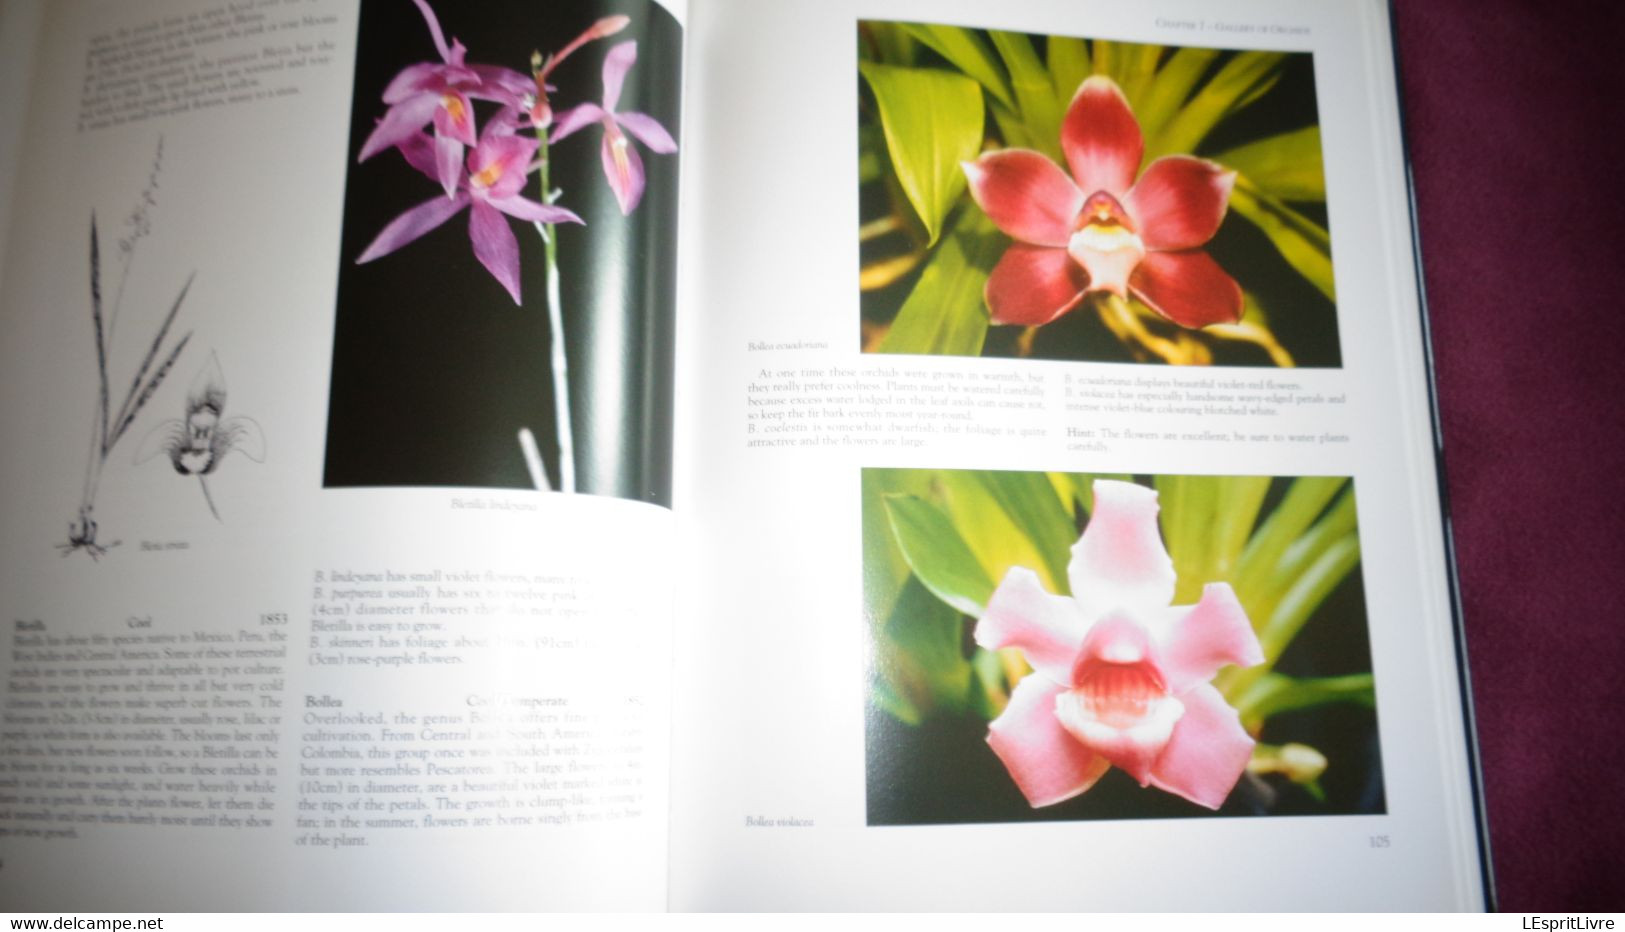 BOTANICAL ORCHIDS And How To Grow Them Botanique Plantes Fleur Orchidées Flowers Index Classification Societies Orchidea